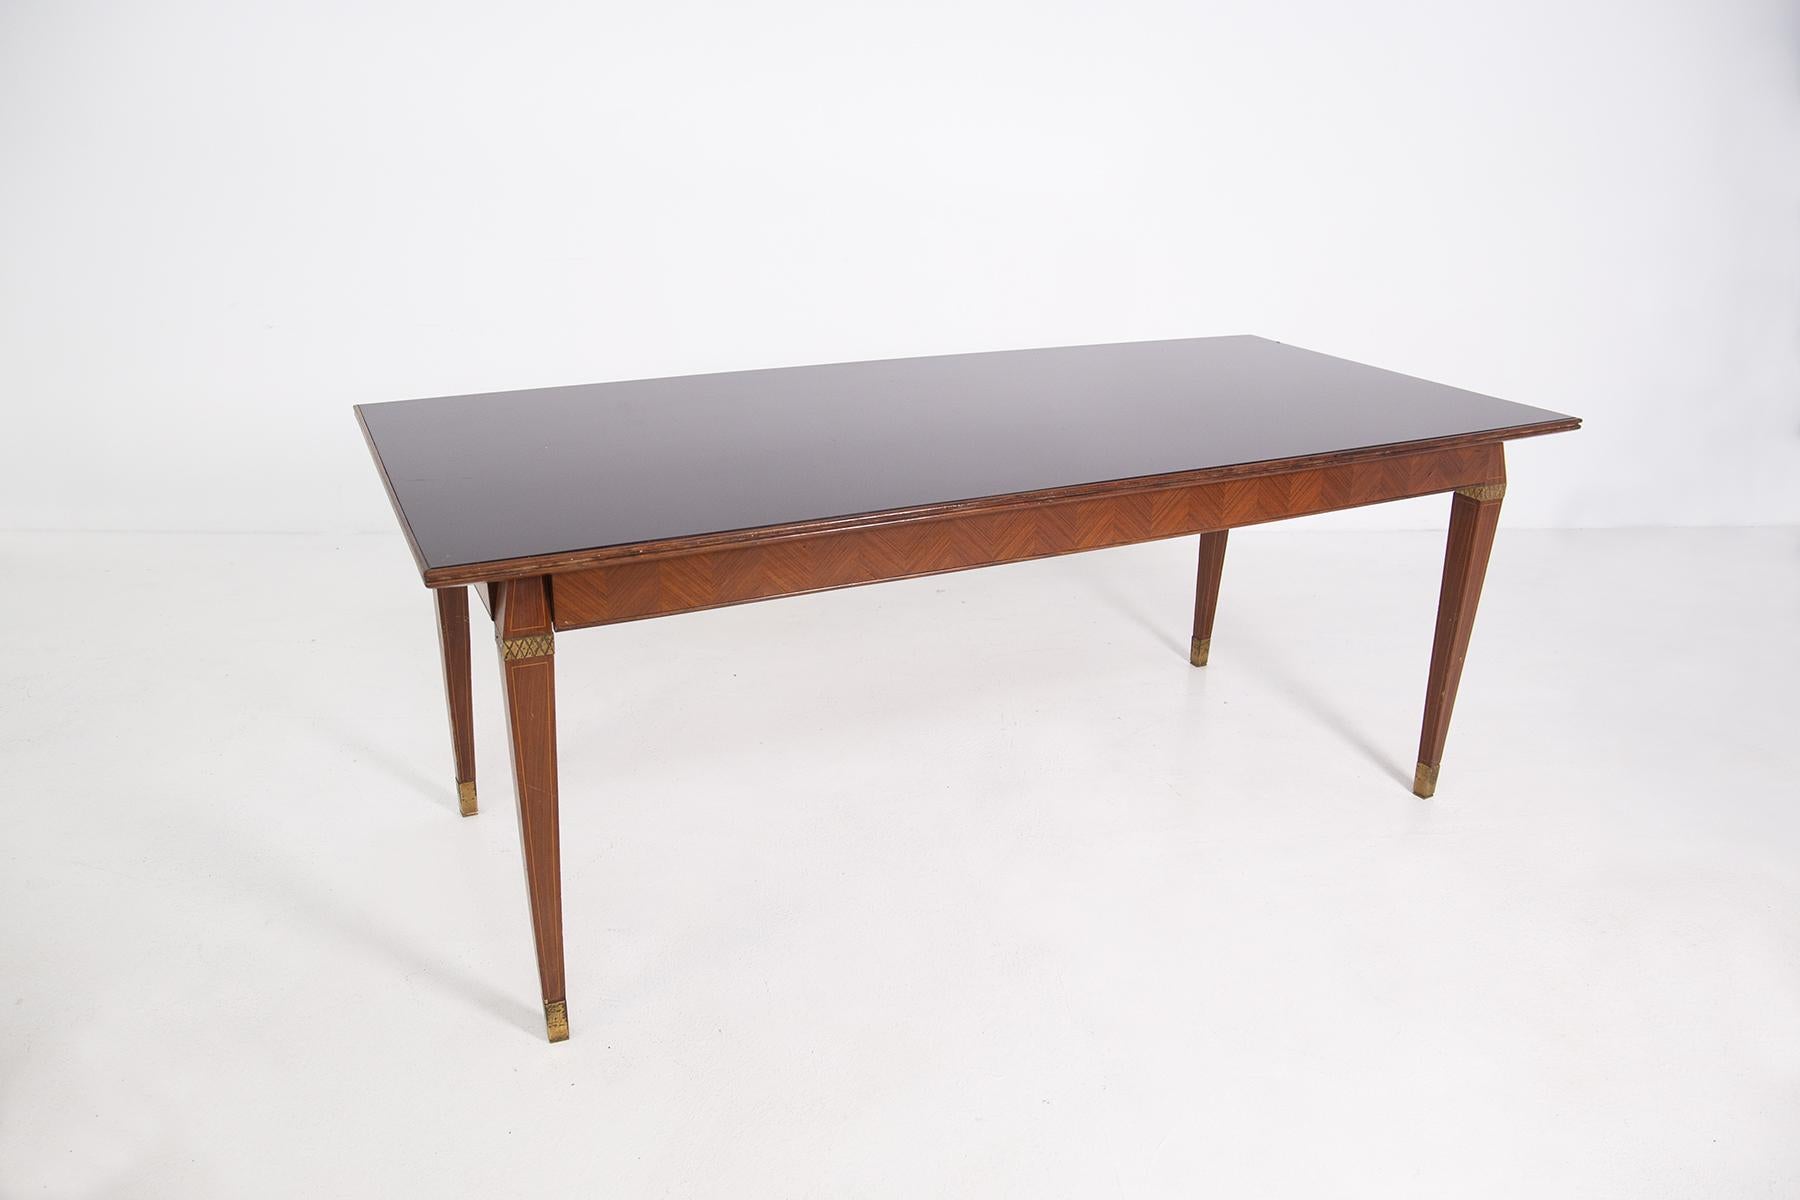 Italienischer Esstisch im Stil von Paolo Buffa aus den 1950er Jahren.
Der Tisch hat eine Holzmaserung und kleine bemalte Elemente in den Beinen.
Die Tischbeine haben die Form eines Prismas, und als letztes Element gibt es eine Messingzwinge. Im